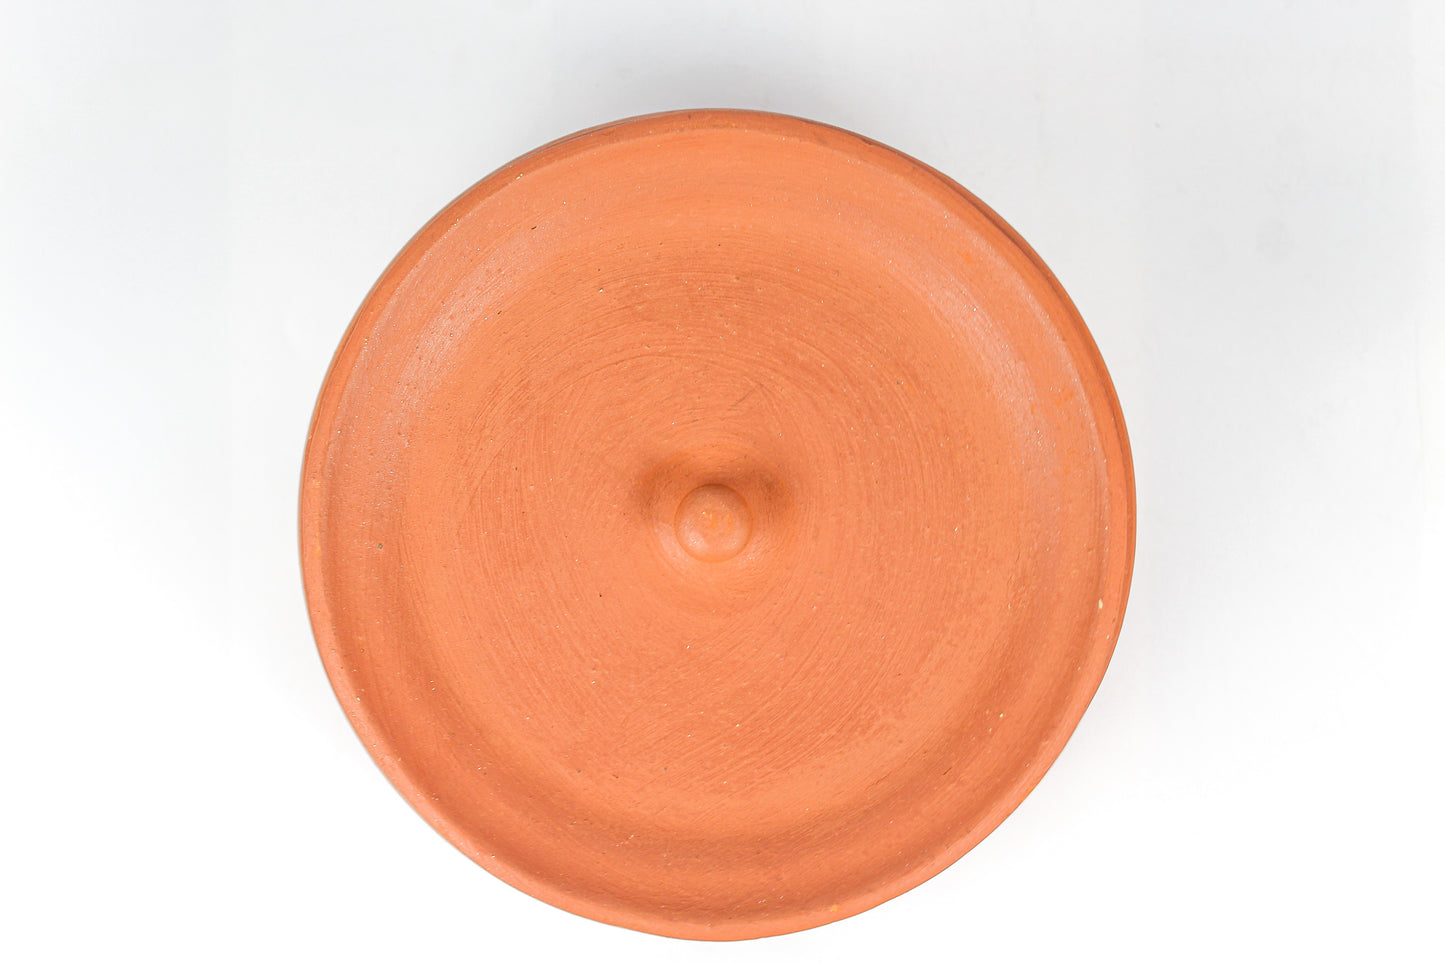 Terracotta Handi (800 ml. Approx) - Home N Earth